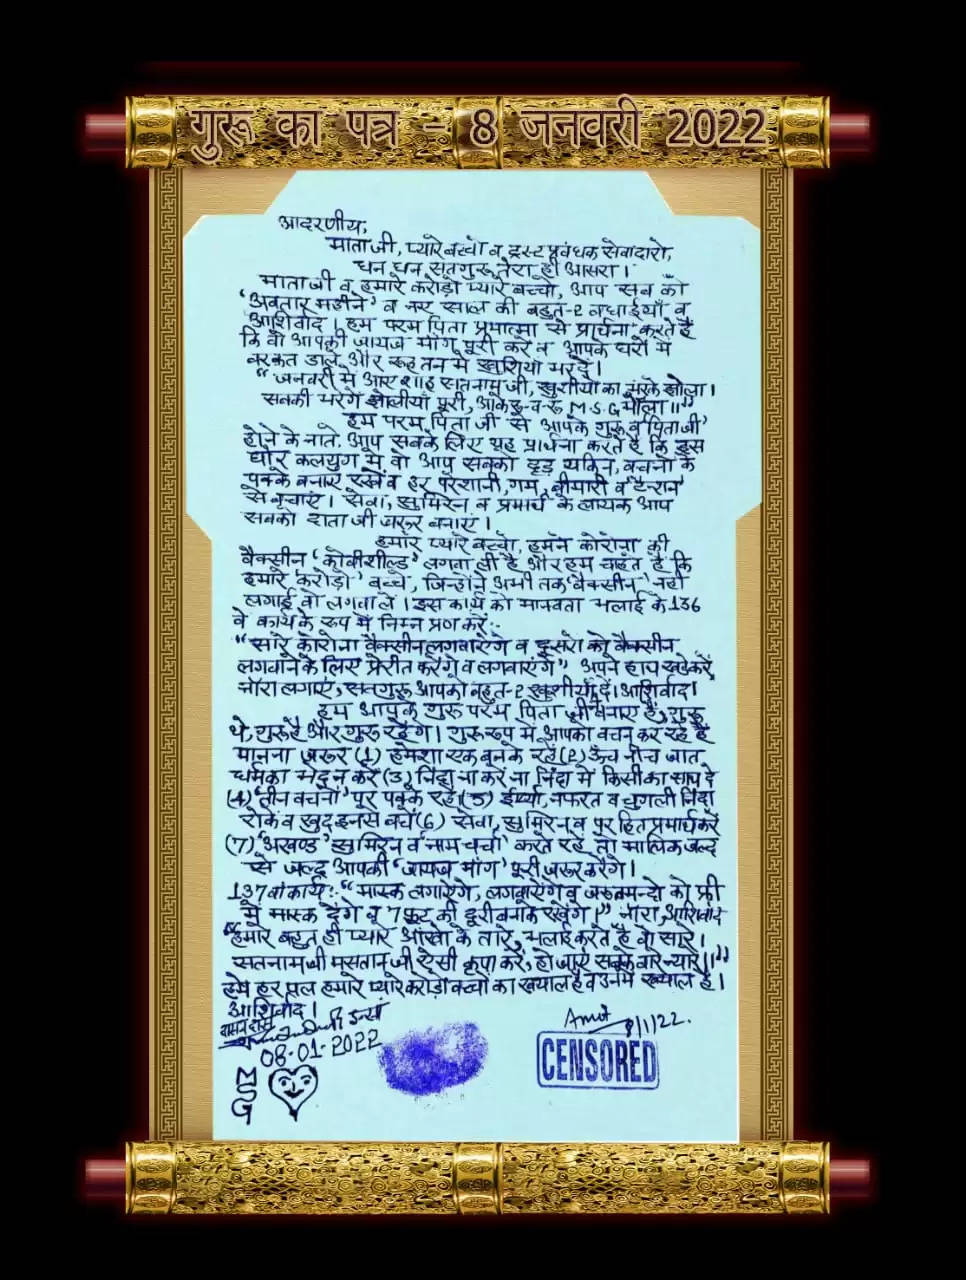 डेरा प्रमुख गुरमीत राम रहीम का सुनारिया जेल से आया पत्र, कोरोना वैक्सीन को लेकर लिखा ये खास संदेश